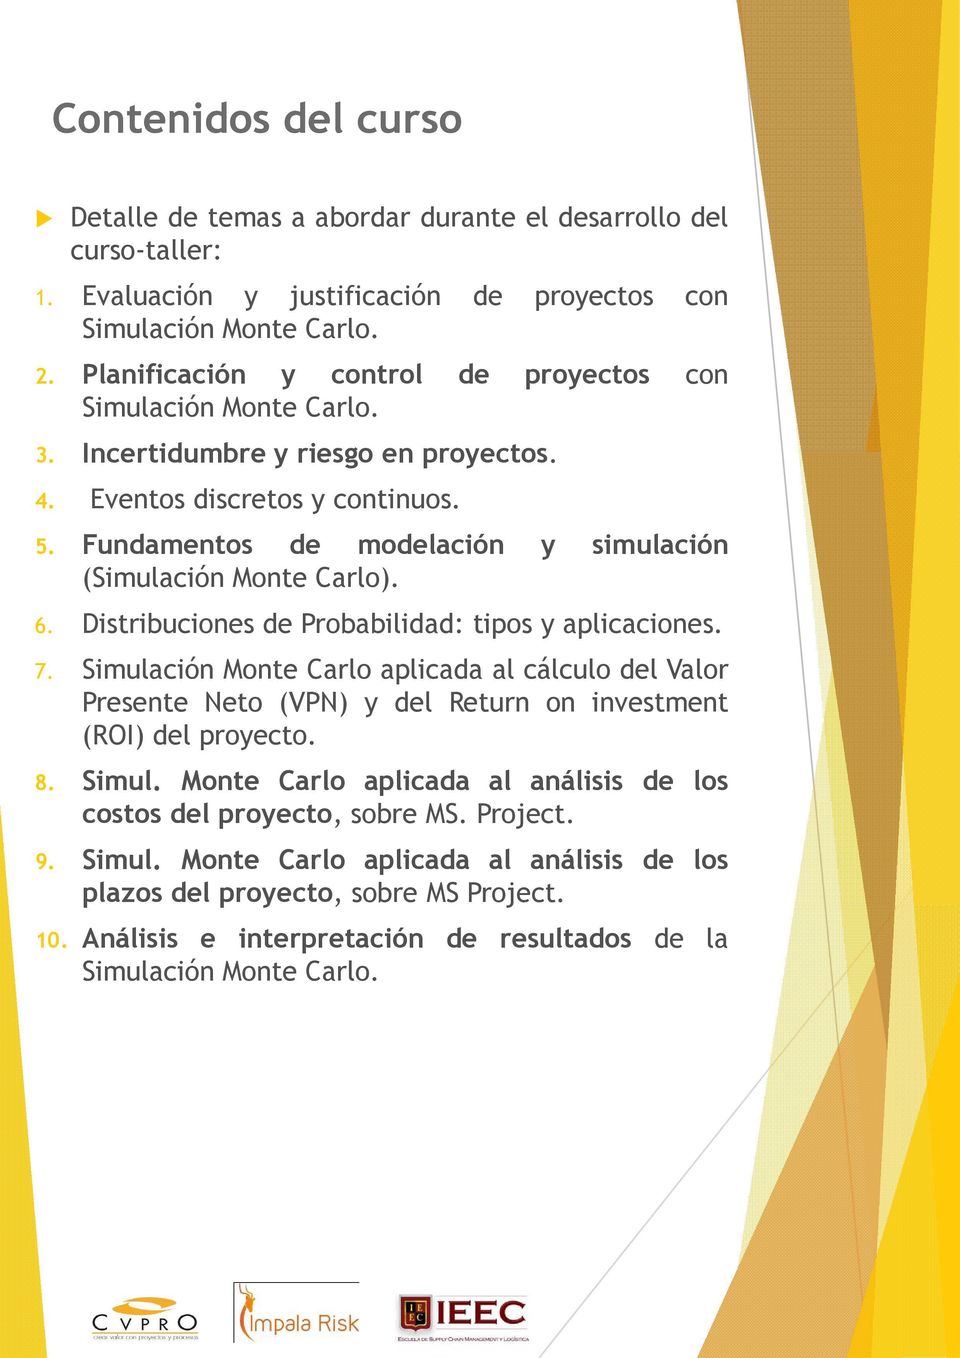 Fundamentos de modelación y simulación (Simulación Monte Carlo). 6. Distribuciones de Probabilidad: tipos y aplicaciones. 7.